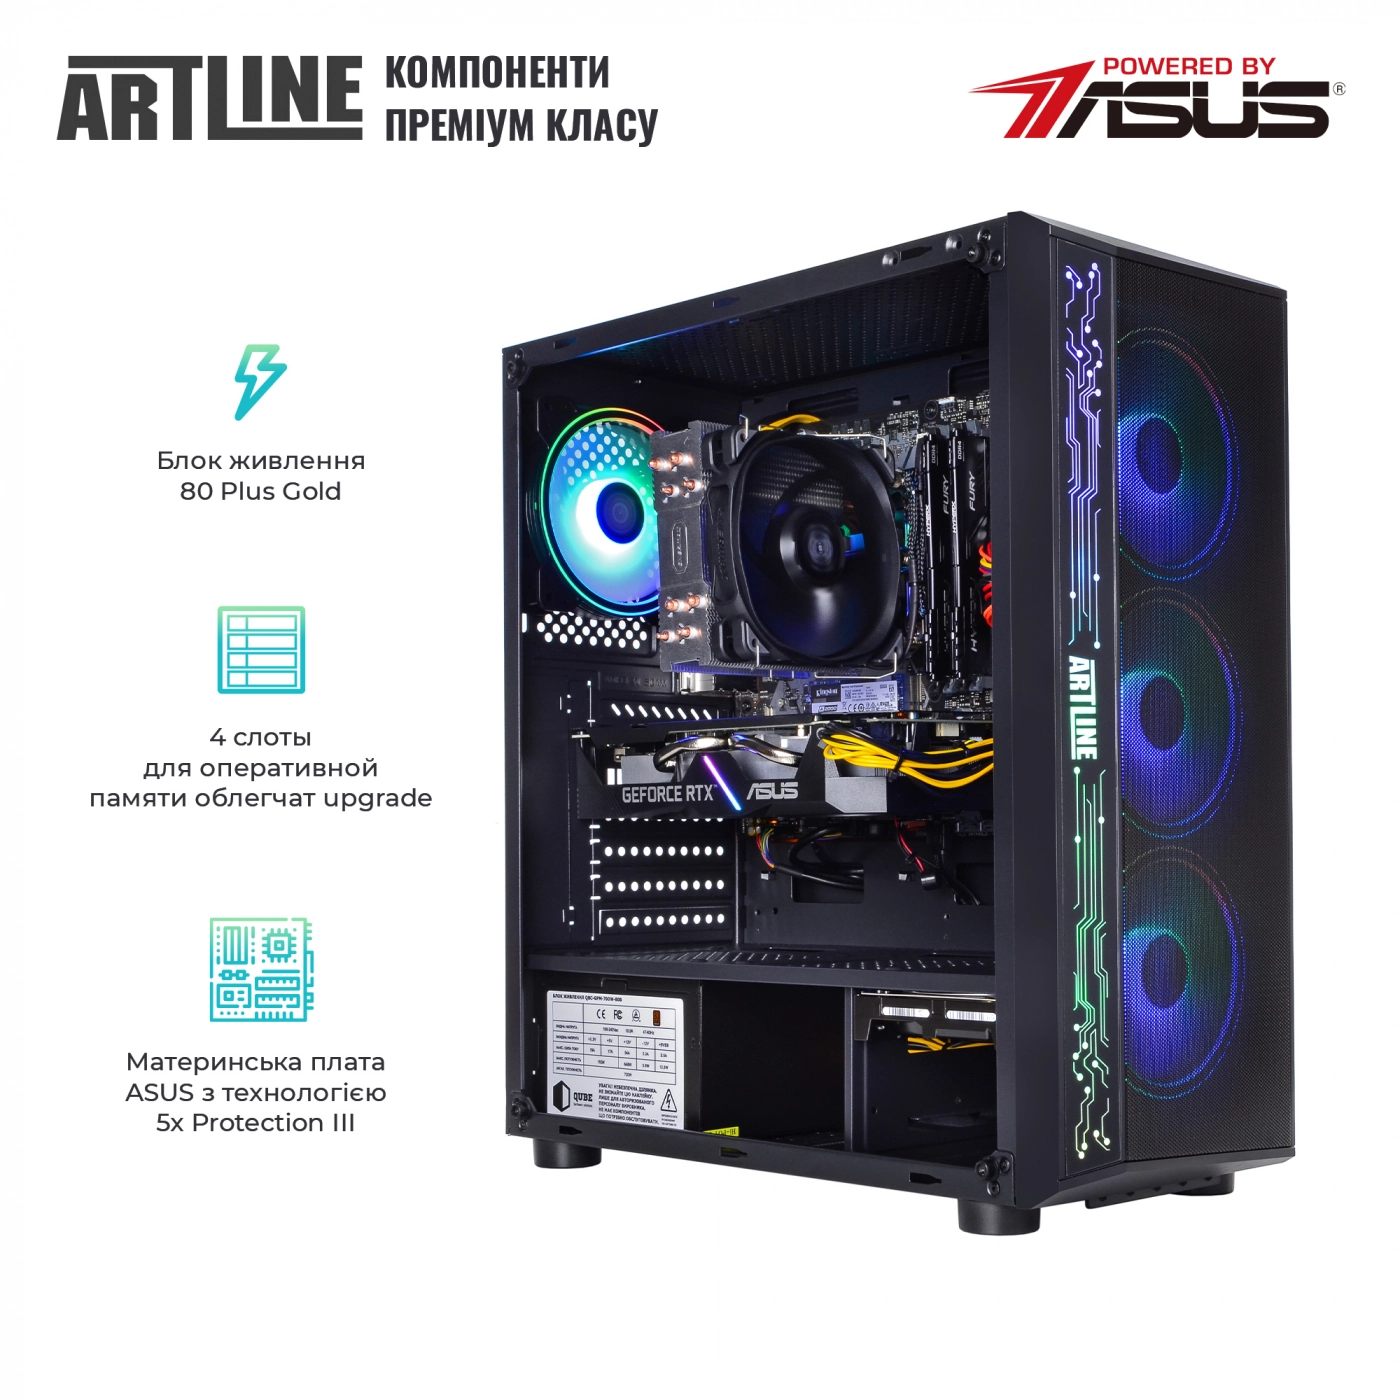 Купить Компьютер ARTLINE Gaming X75v27 - фото 2